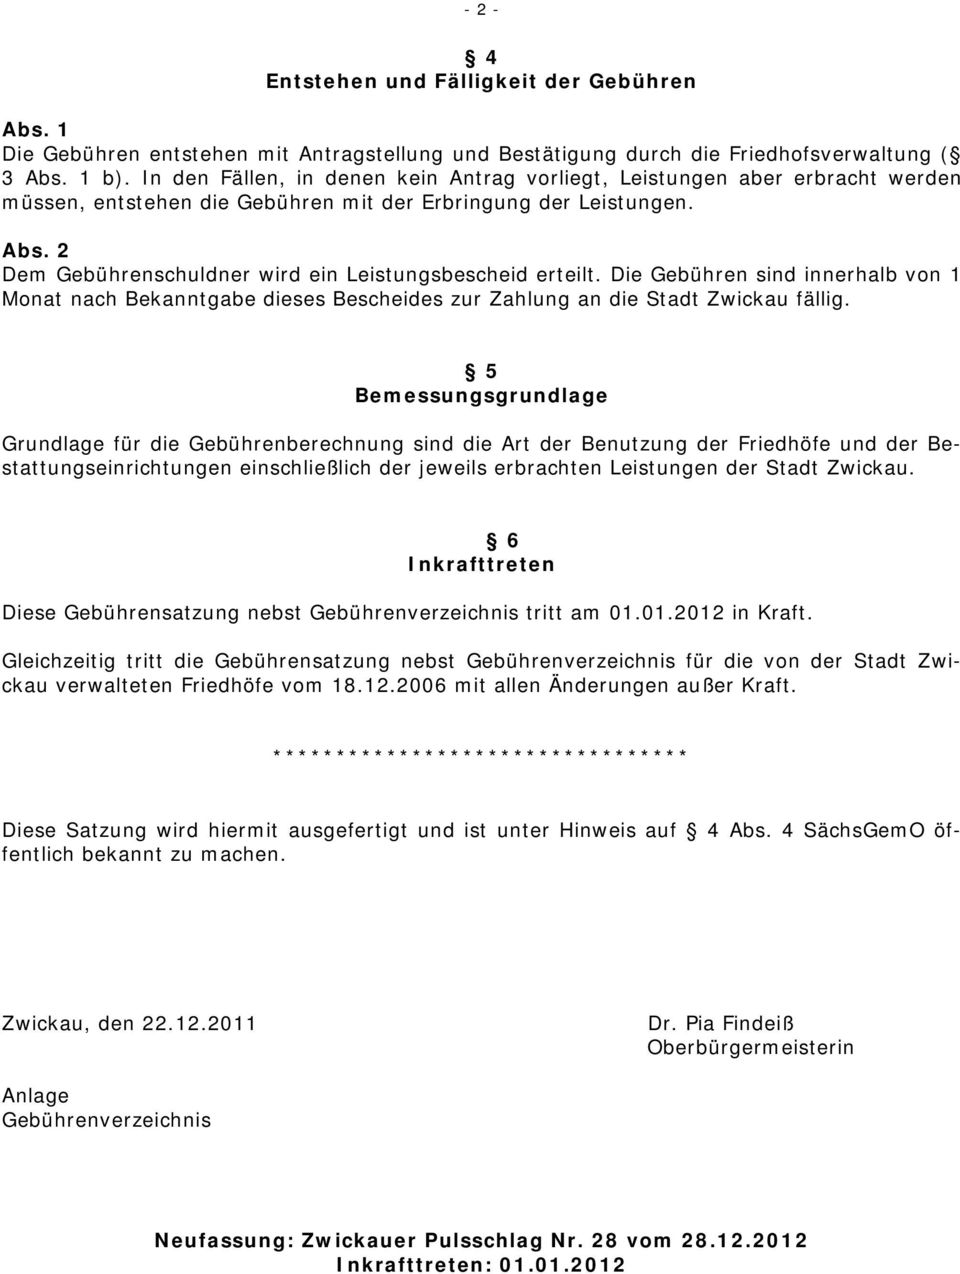 2 Dem Gebührenschuldner wird ein Leistungsbescheid erteilt. Die Gebühren sind innerhalb von 1 Monat nach Bekanntgabe dieses Bescheides zur Zahlung an die Stadt Zwickau fällig.